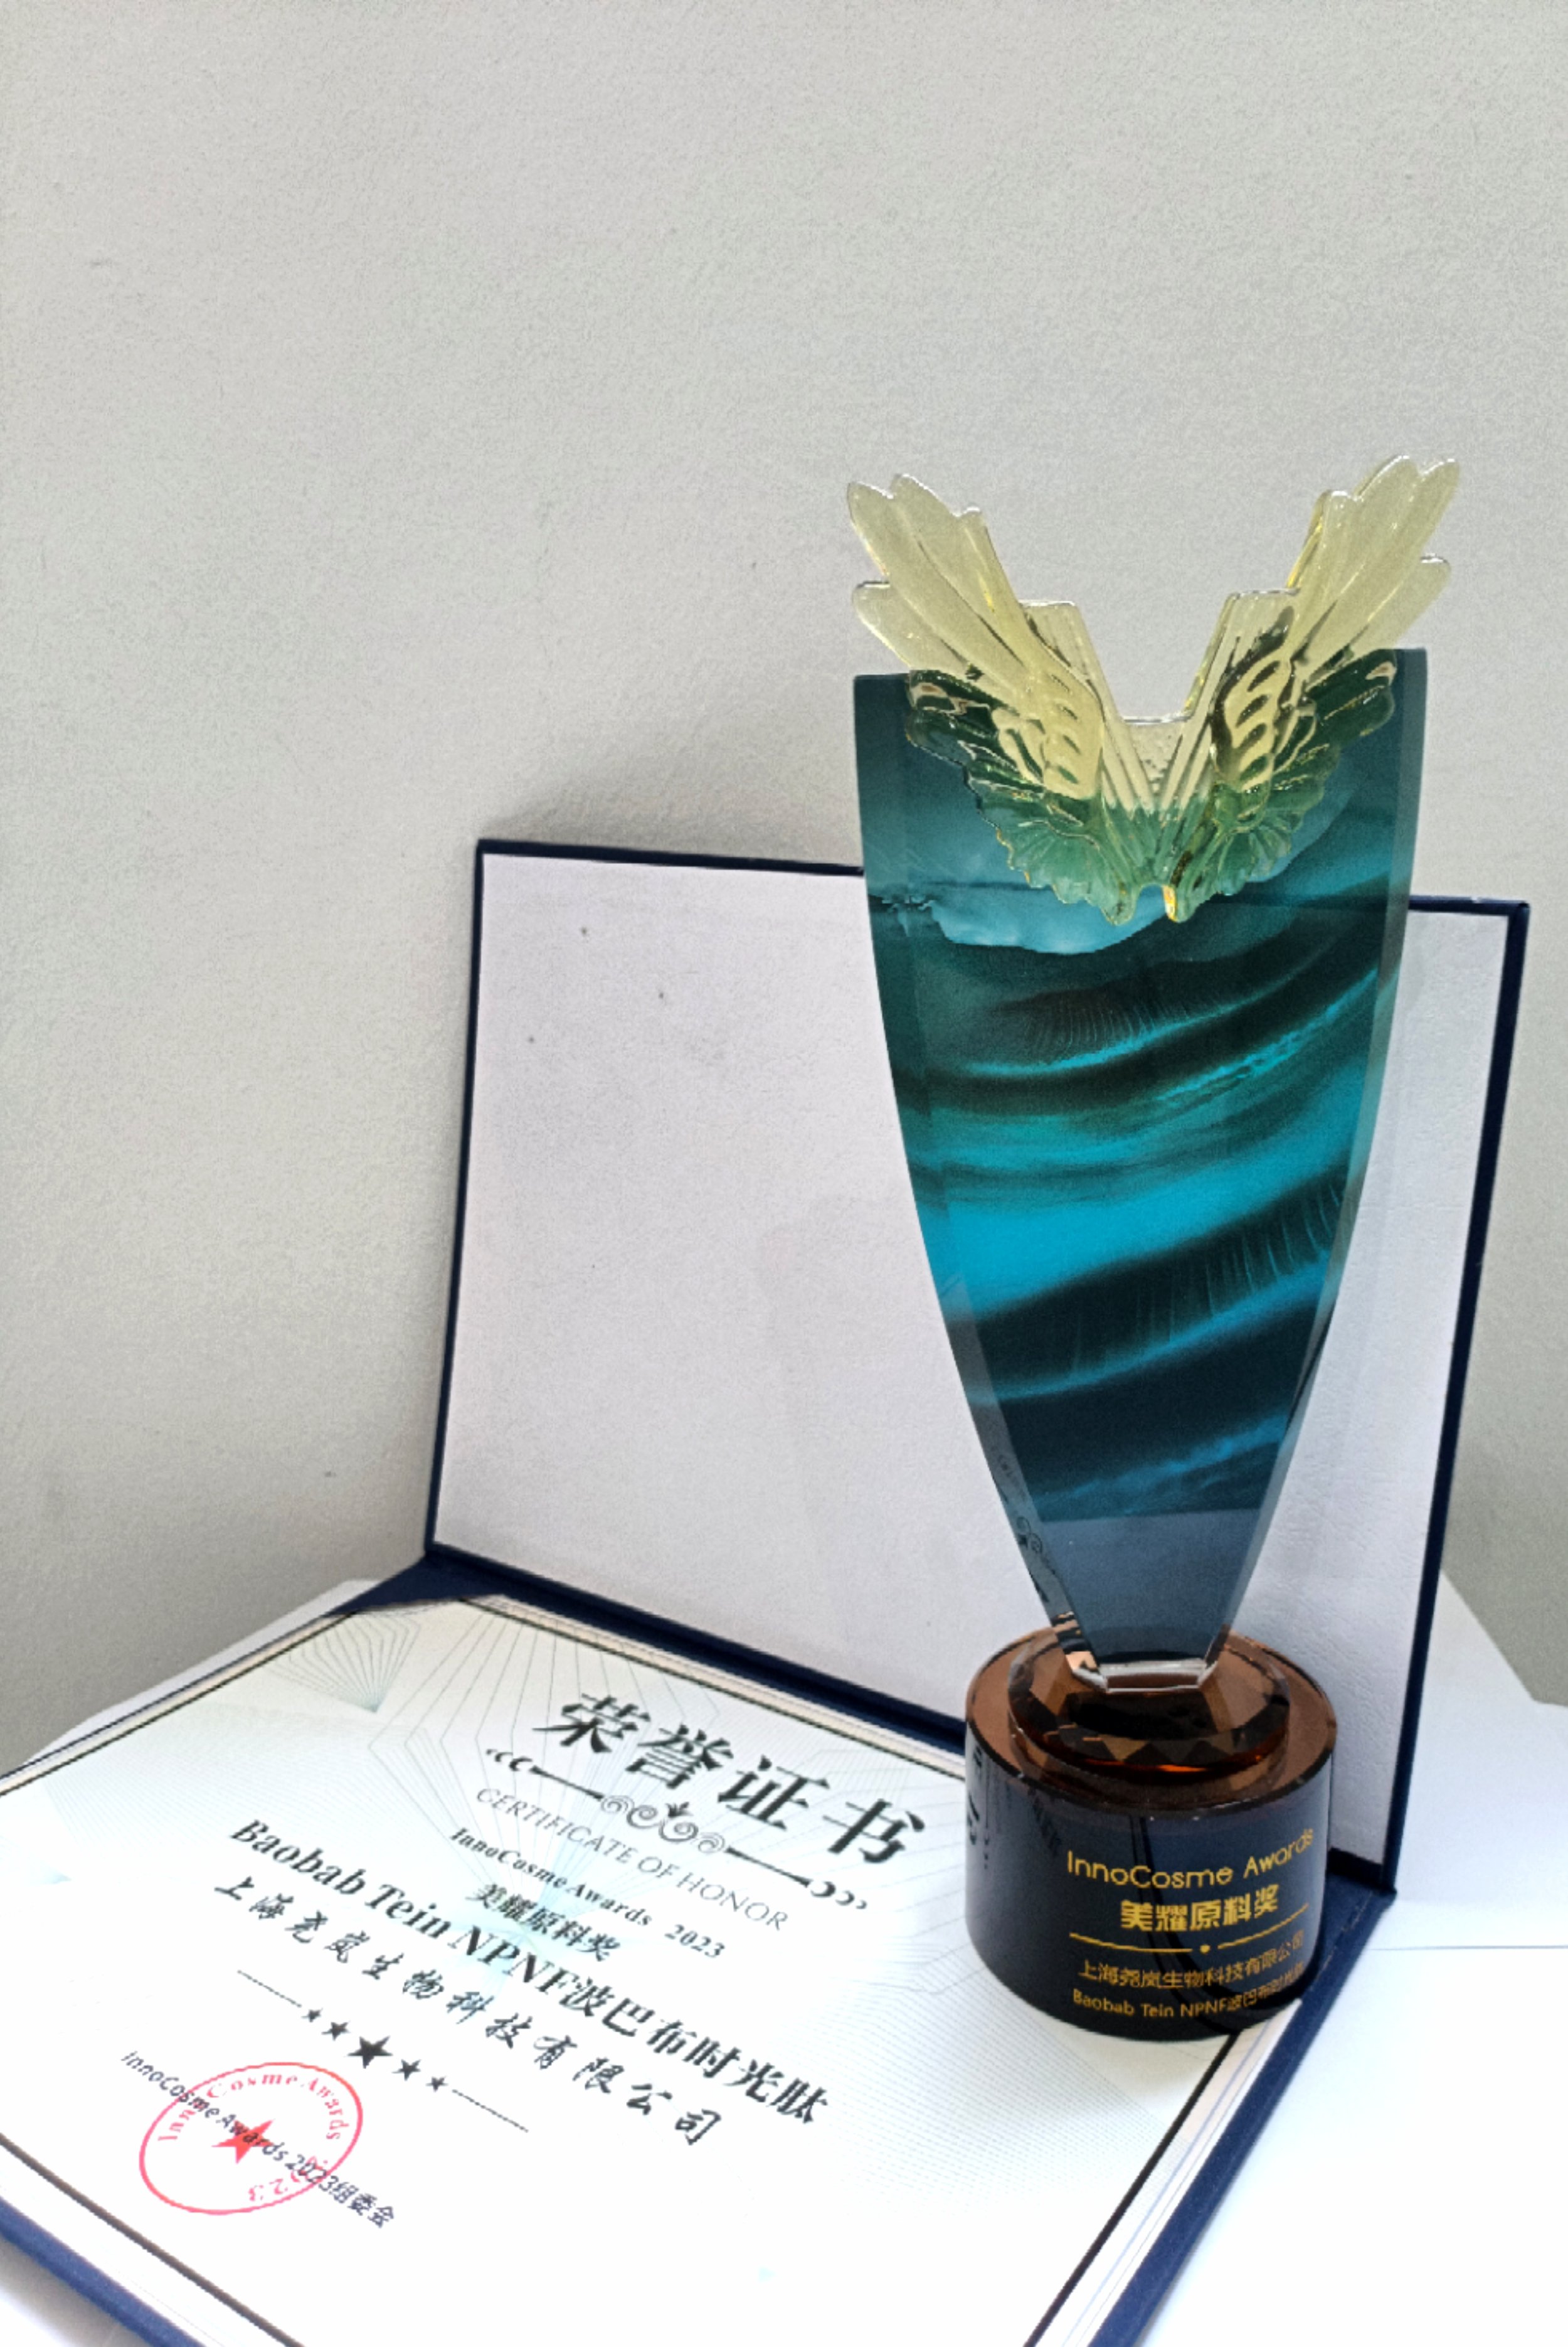 Baobab Tein NPNF® ha sido galardonado con el prestigioso título de "Ingrediente más creativo" en los Premios InnoCosme 2023.